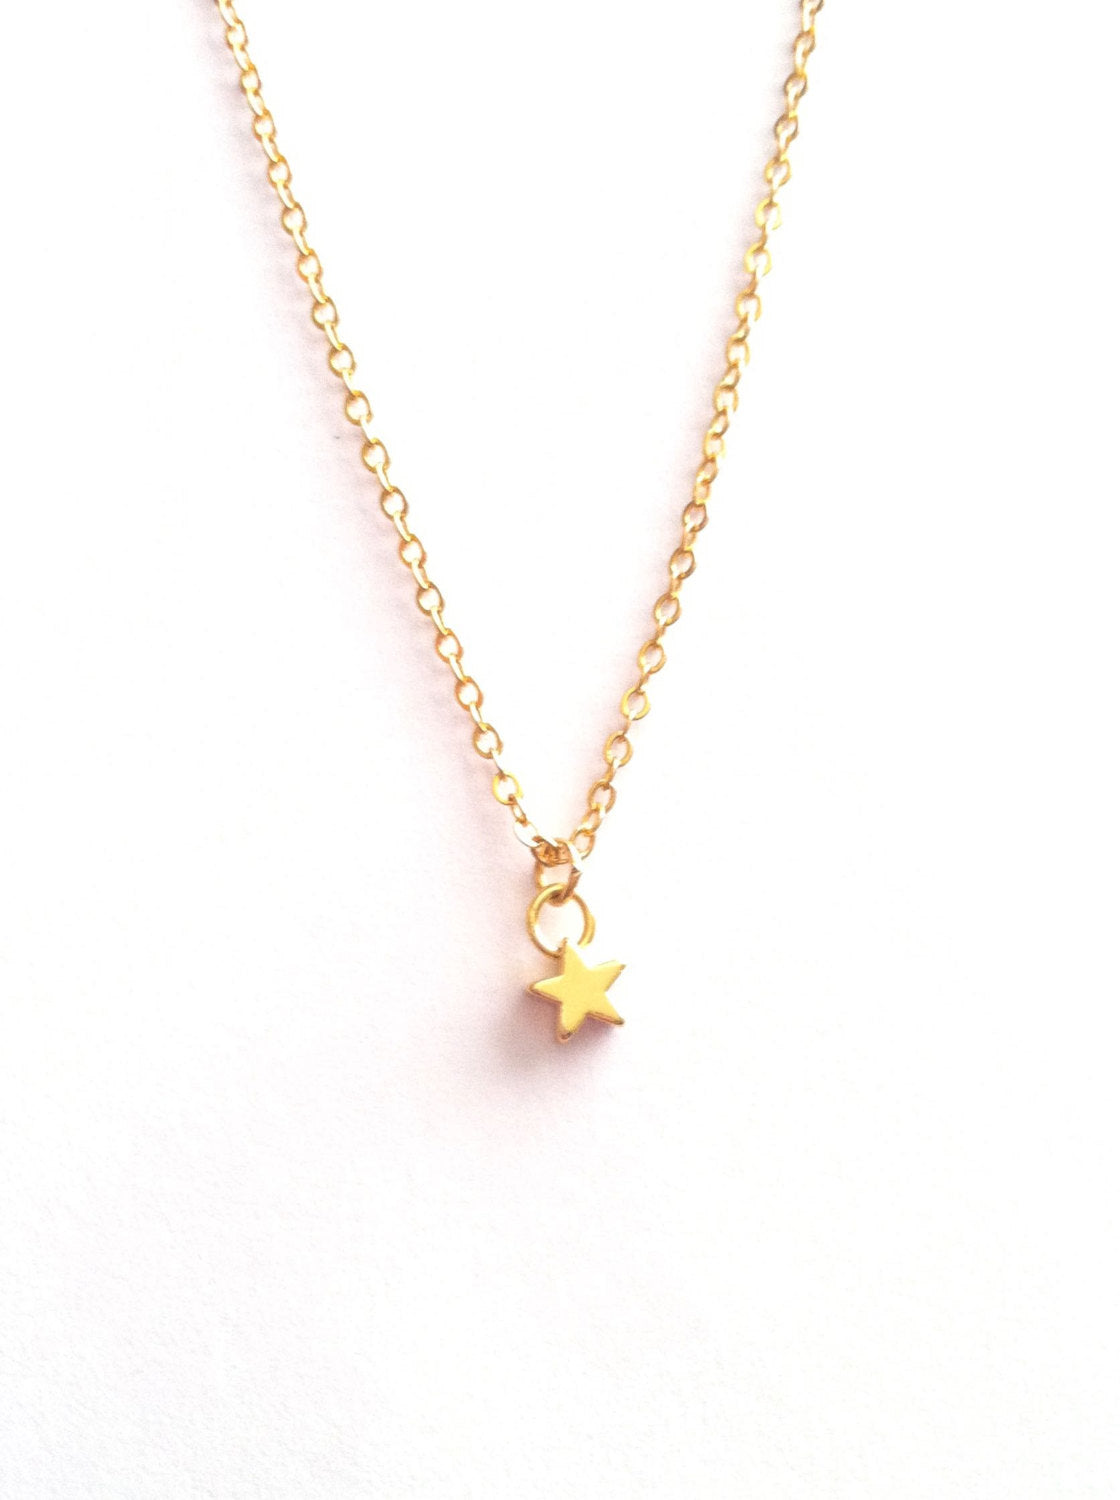 Minimalist Tiny Star Necklace | IB Jewelry